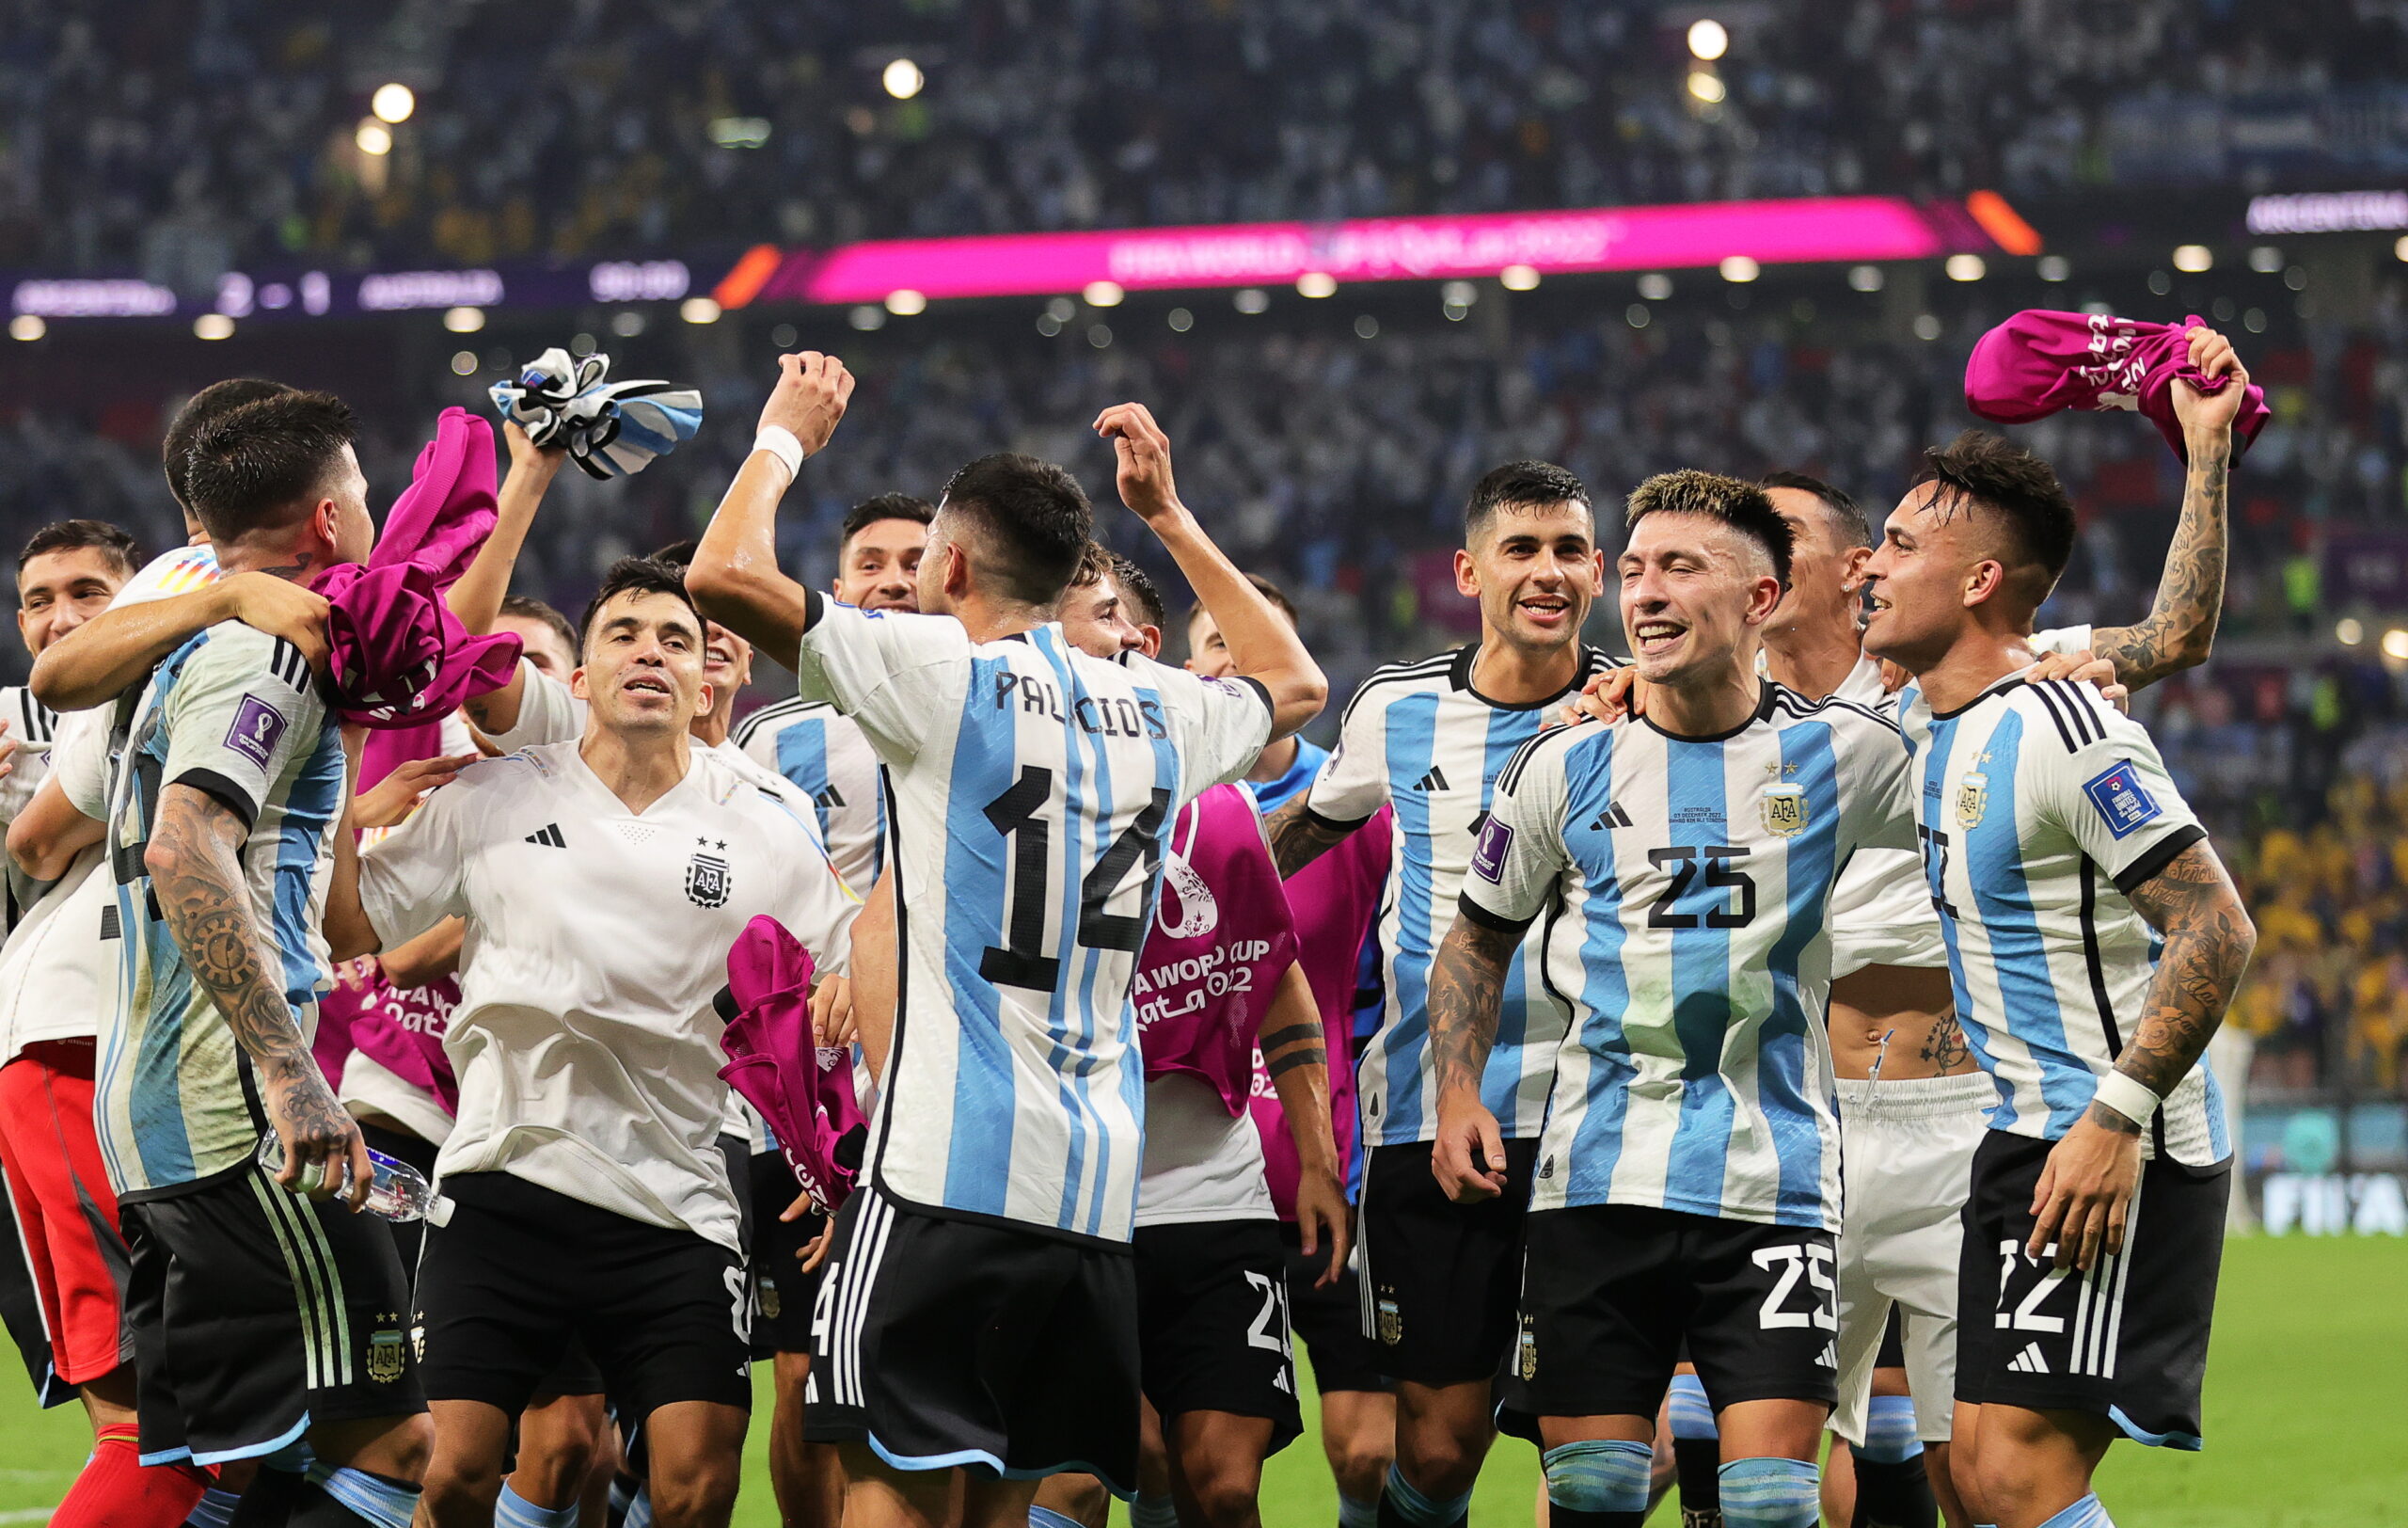 Μουντιάλ 2022, Αργεντινή - Αυστραλία 2-1: Οι φανταστικοί Μέσι και Εμιλιάνο Μαρτίνες την έστειλαν στα προημιτελικά